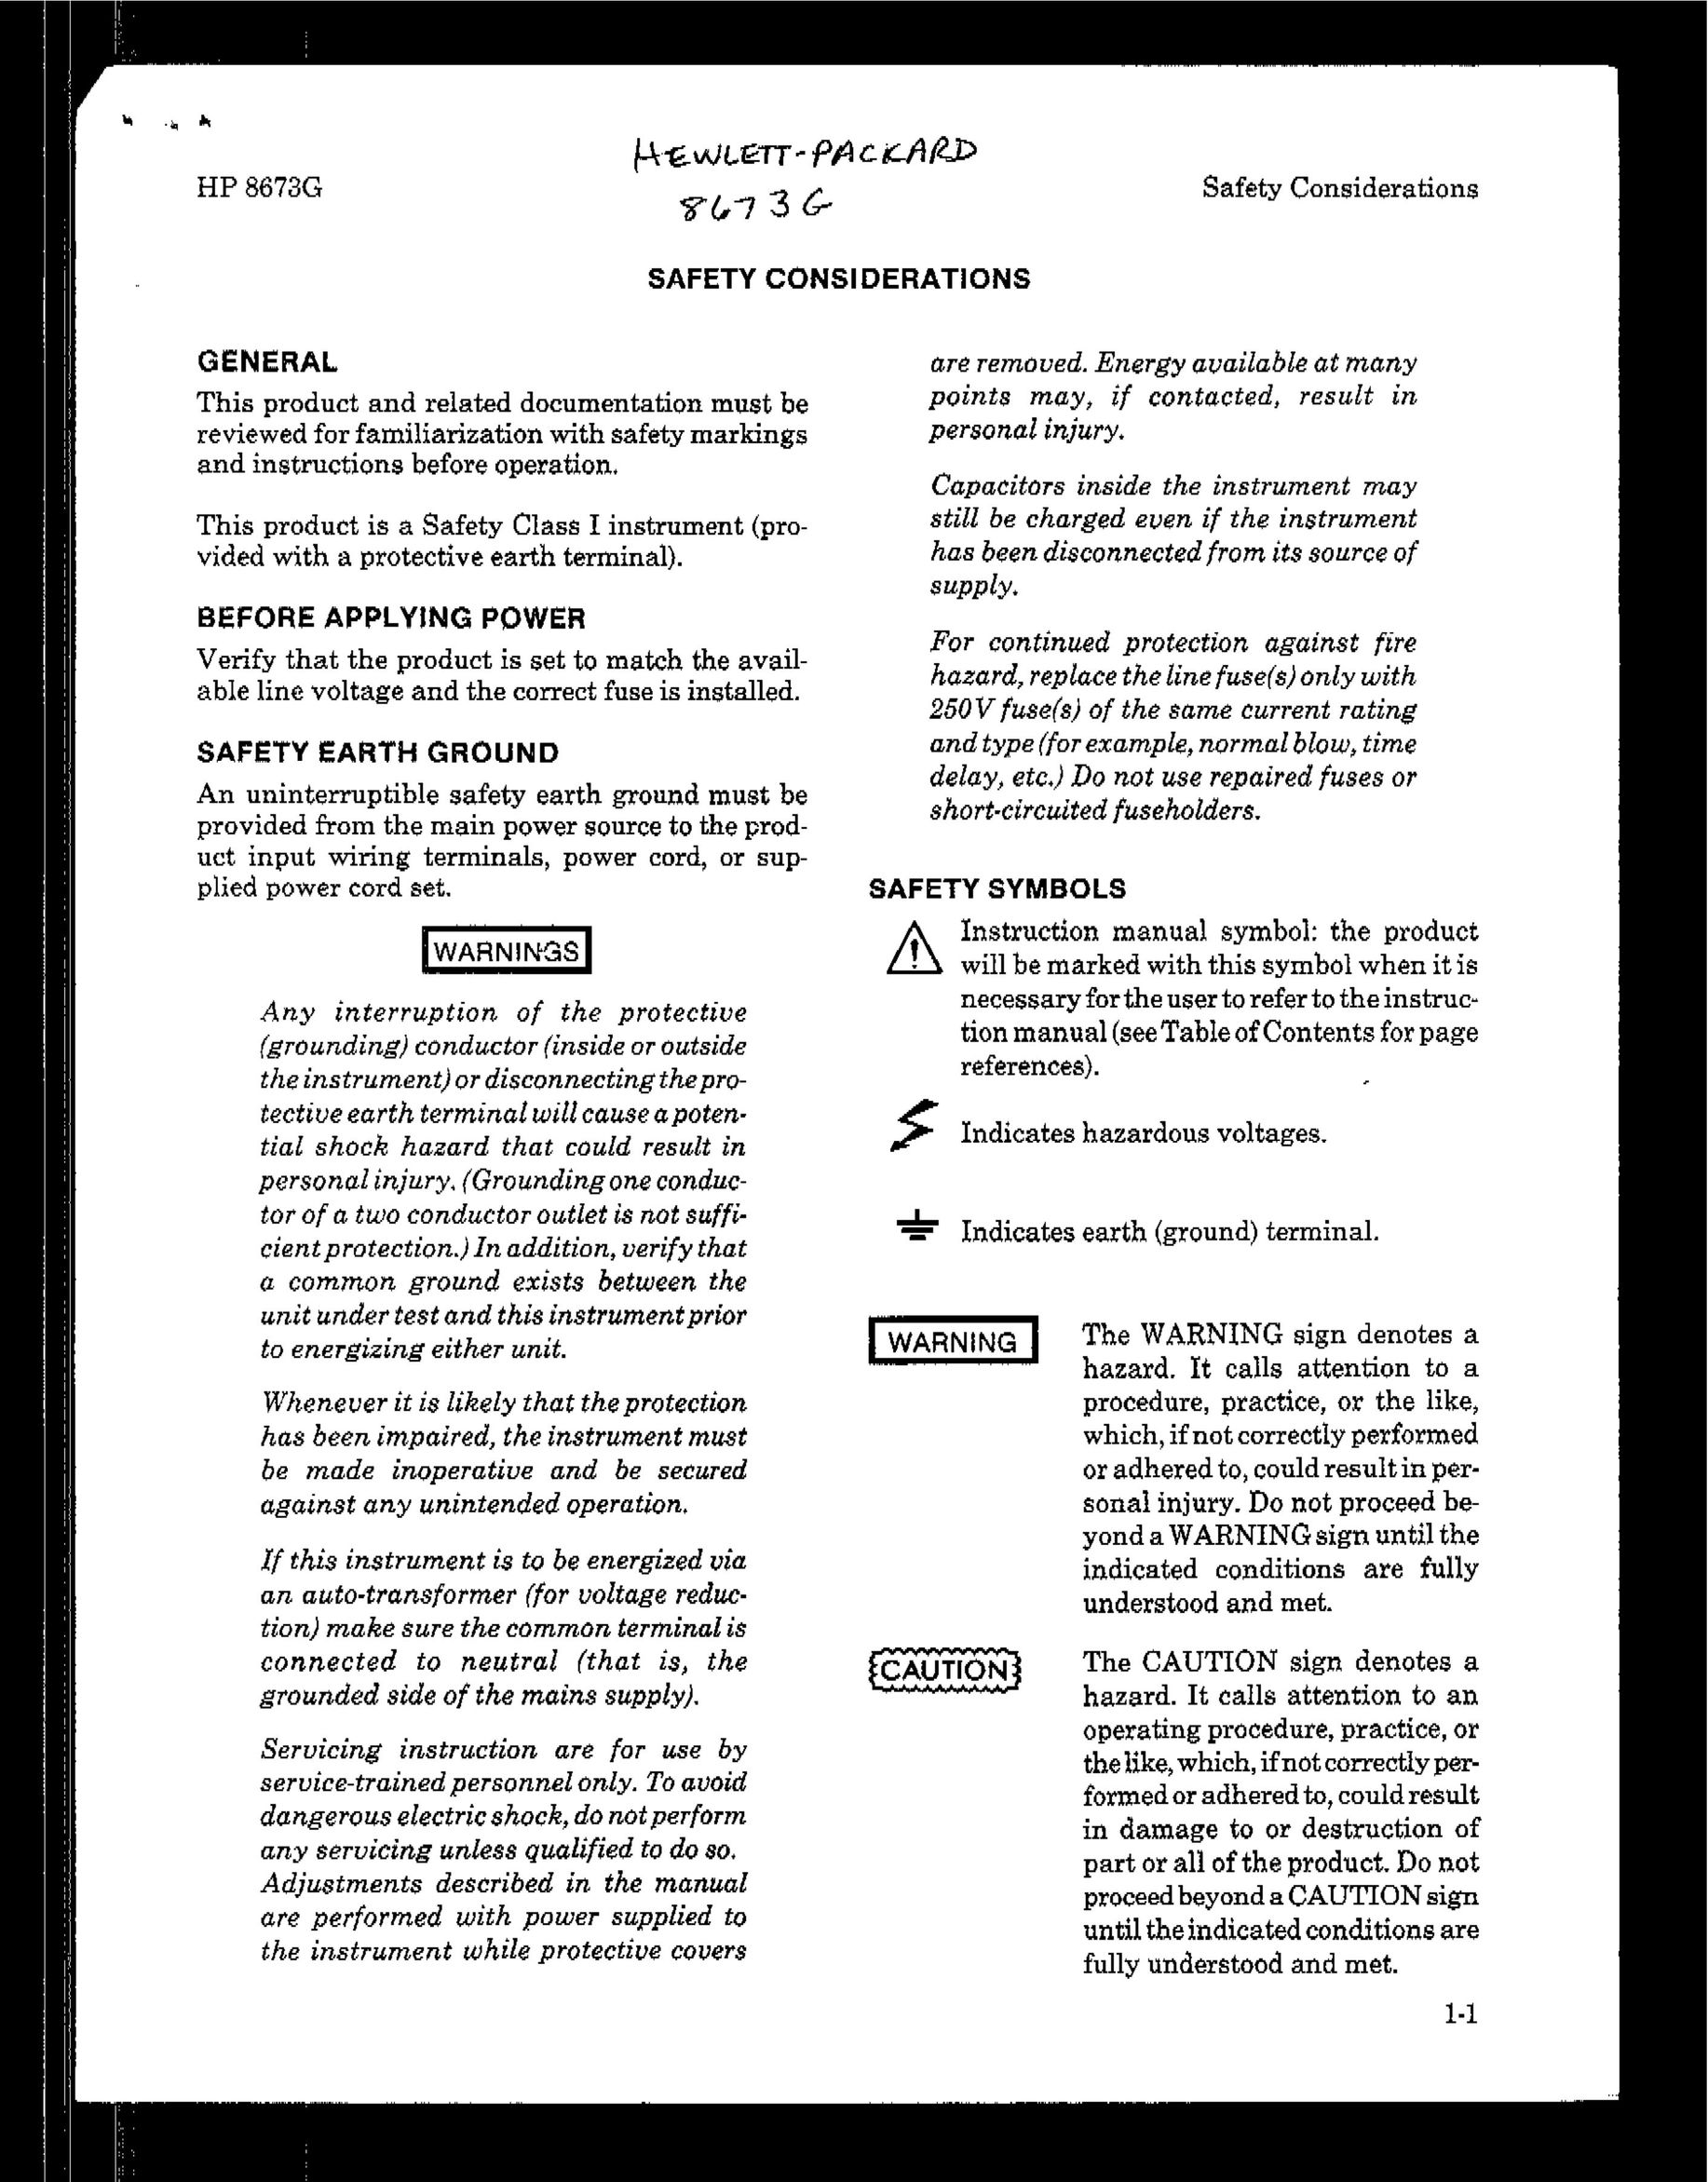 HP (Hewlett-Packard) HP 8673G Safety Gate User Manual